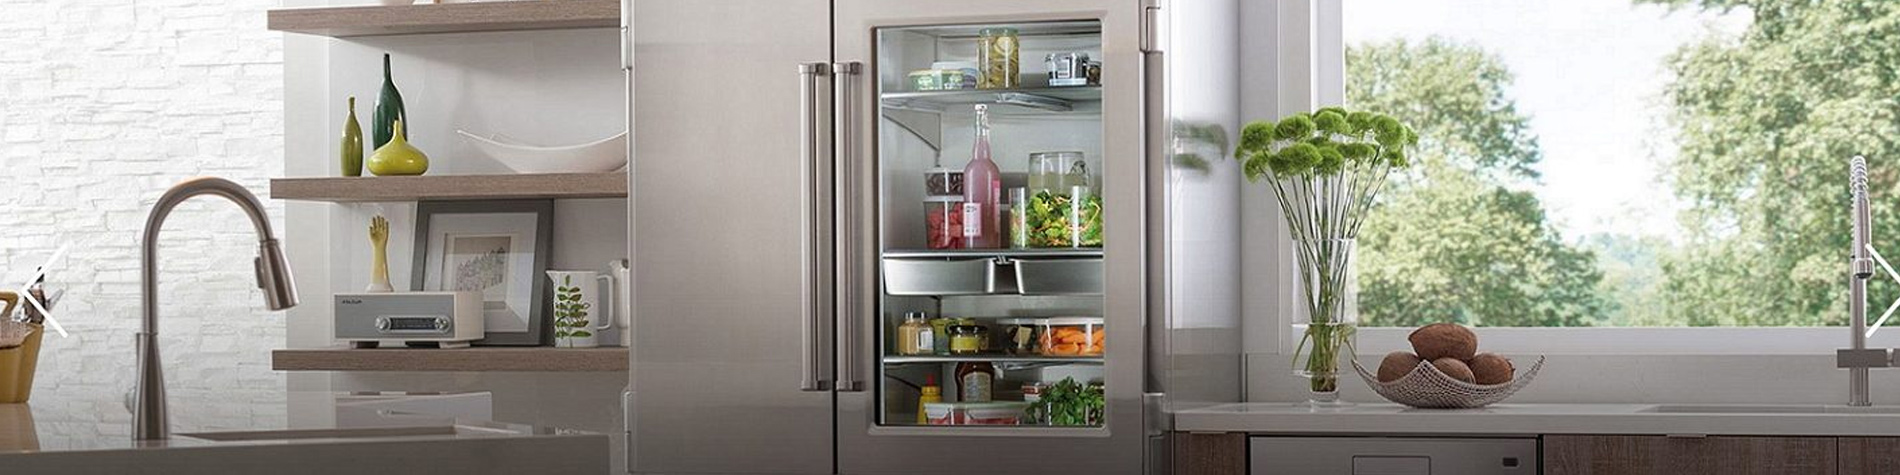 Sub Zero Pro 48 refrigerator repair header